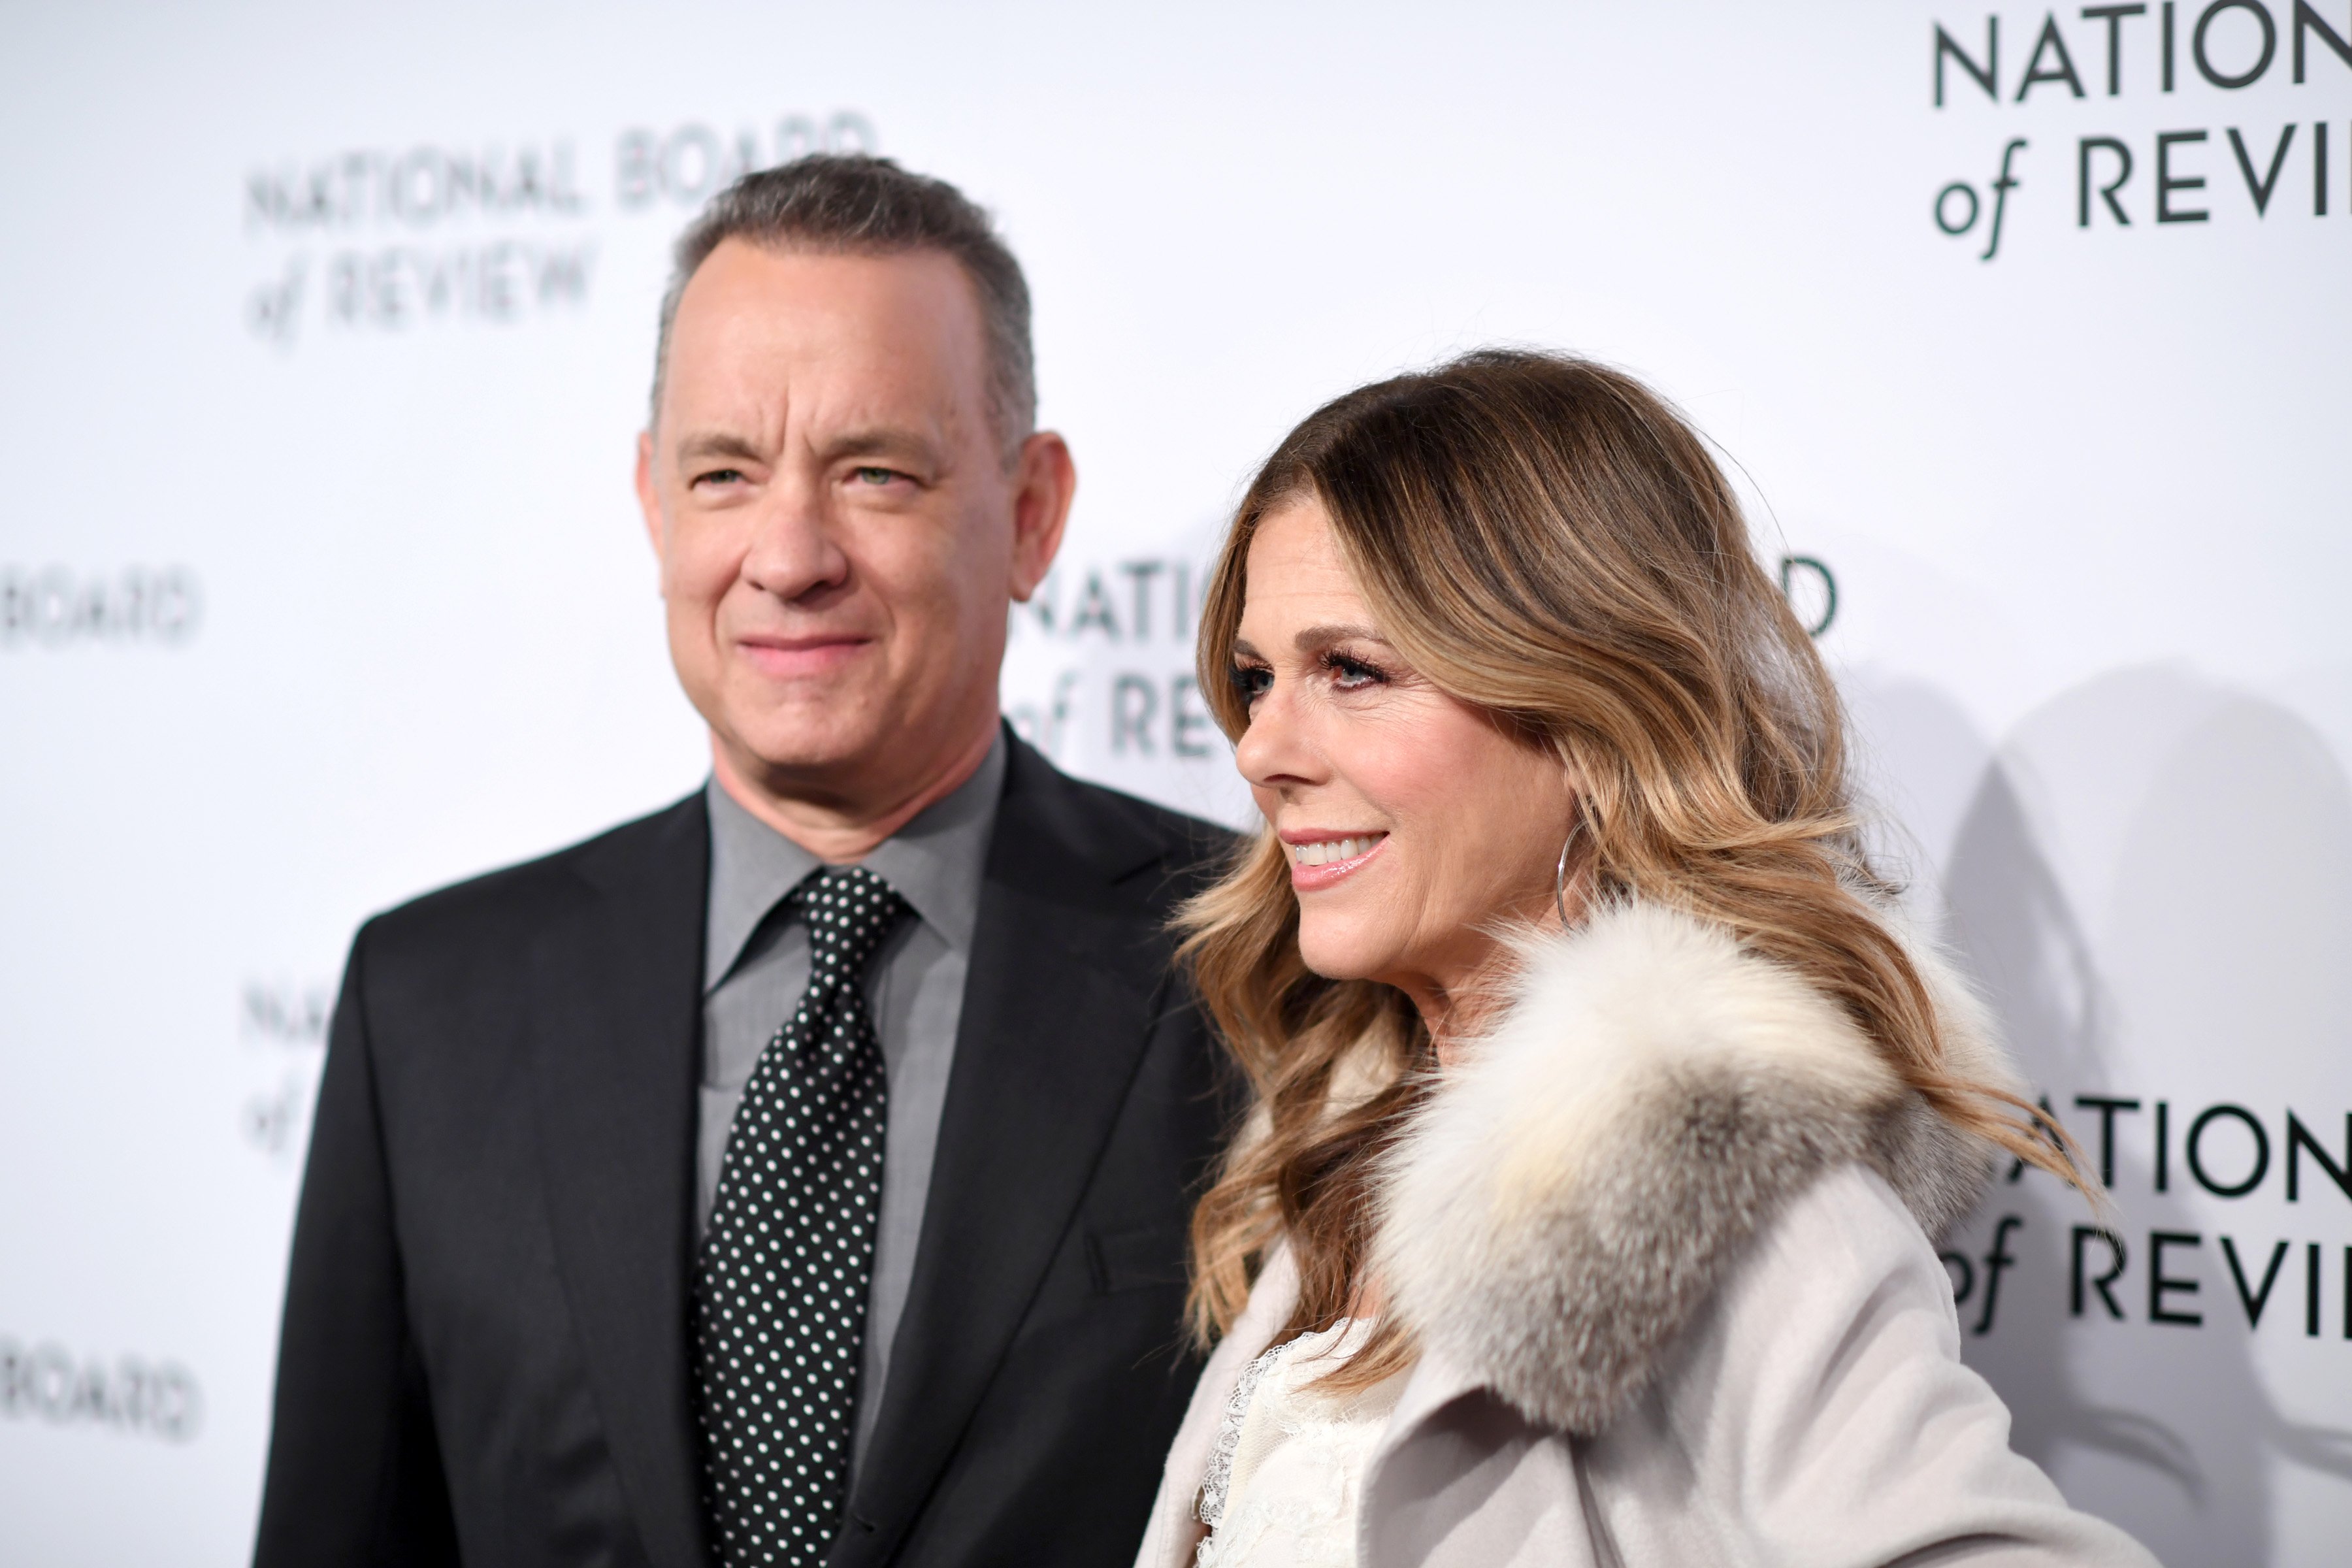 Los actores Tom Hanks y Rita Wilson asisten a la Gala Anual de Premios de la Junta Nacional de Revisión en Cipriani 42nd Street el 9 de enero de 2018 en la ciudad de Nueva York. | Foto: Getty Images